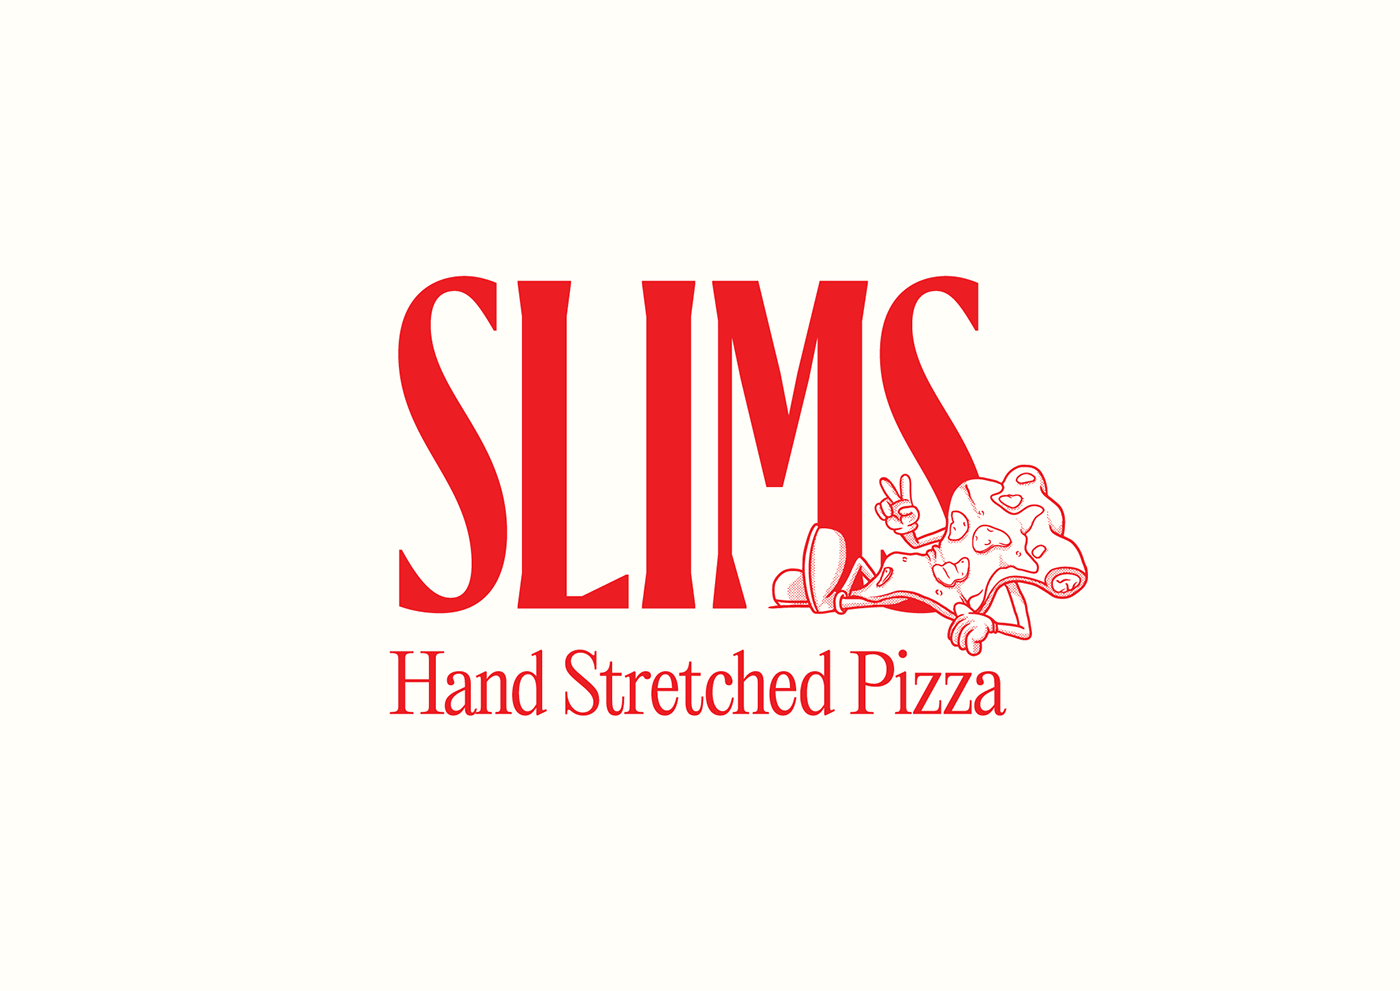 merkidentiteit branding identiteit ILLUSTRATIE logo menu Pizza restaurant typografie visuele identiteit